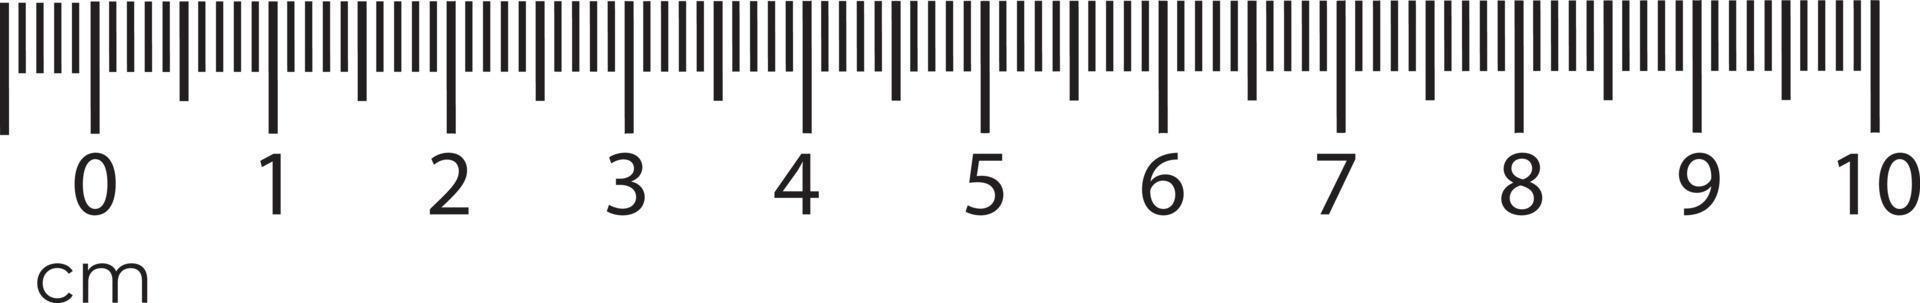 10 centimetri righello misurazione attrezzo con numeri scala. vettore centimetro grafico con millimetro griglia sistema